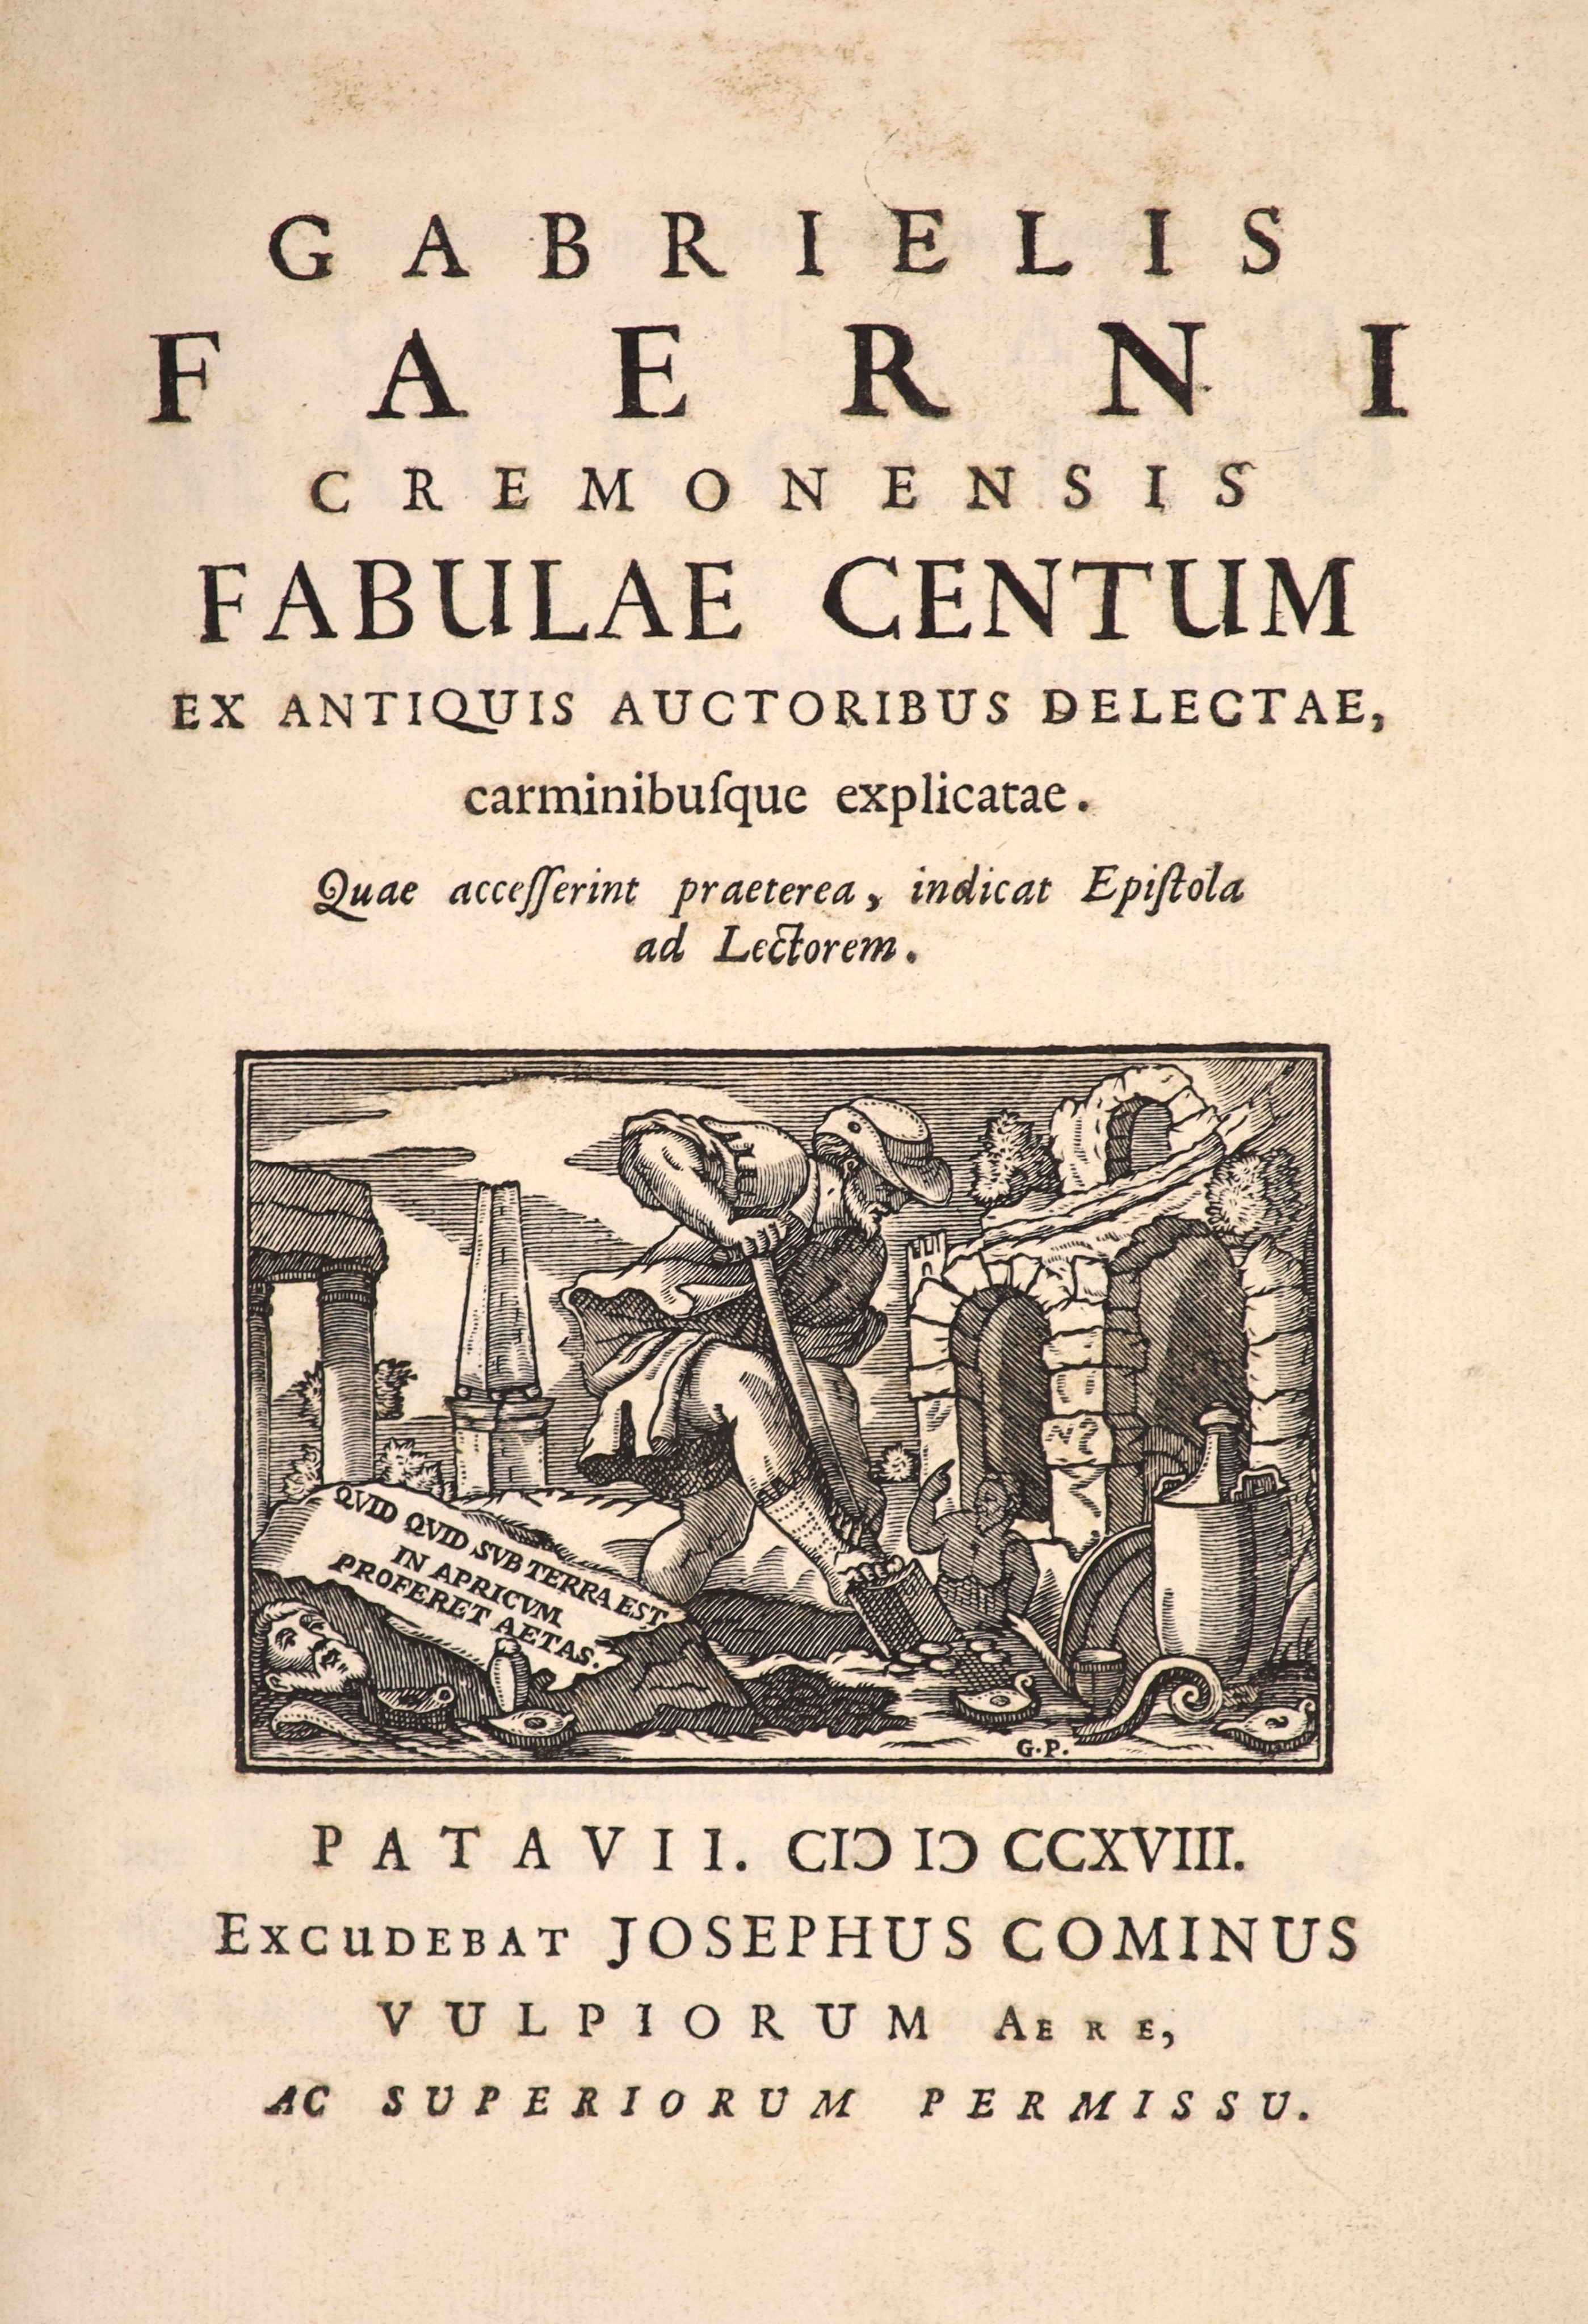 Faerni, Gabriel. Cremonensis Fabulae Centum ...